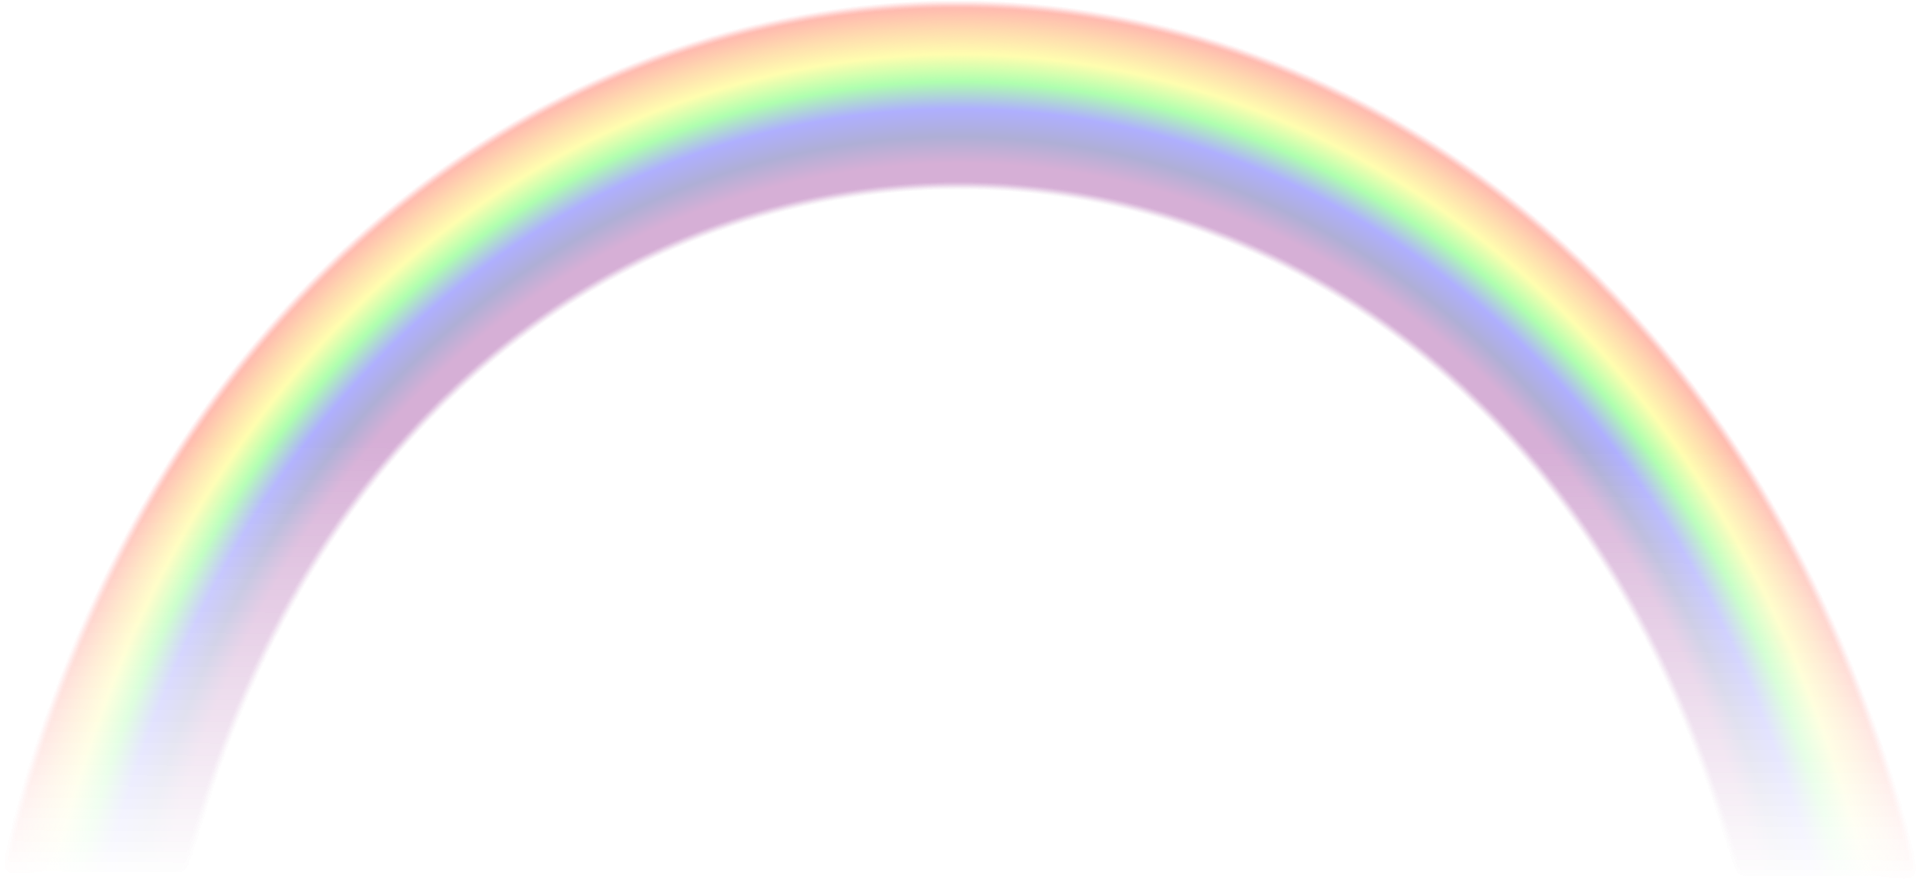 Rainbow Spectrum Transparent